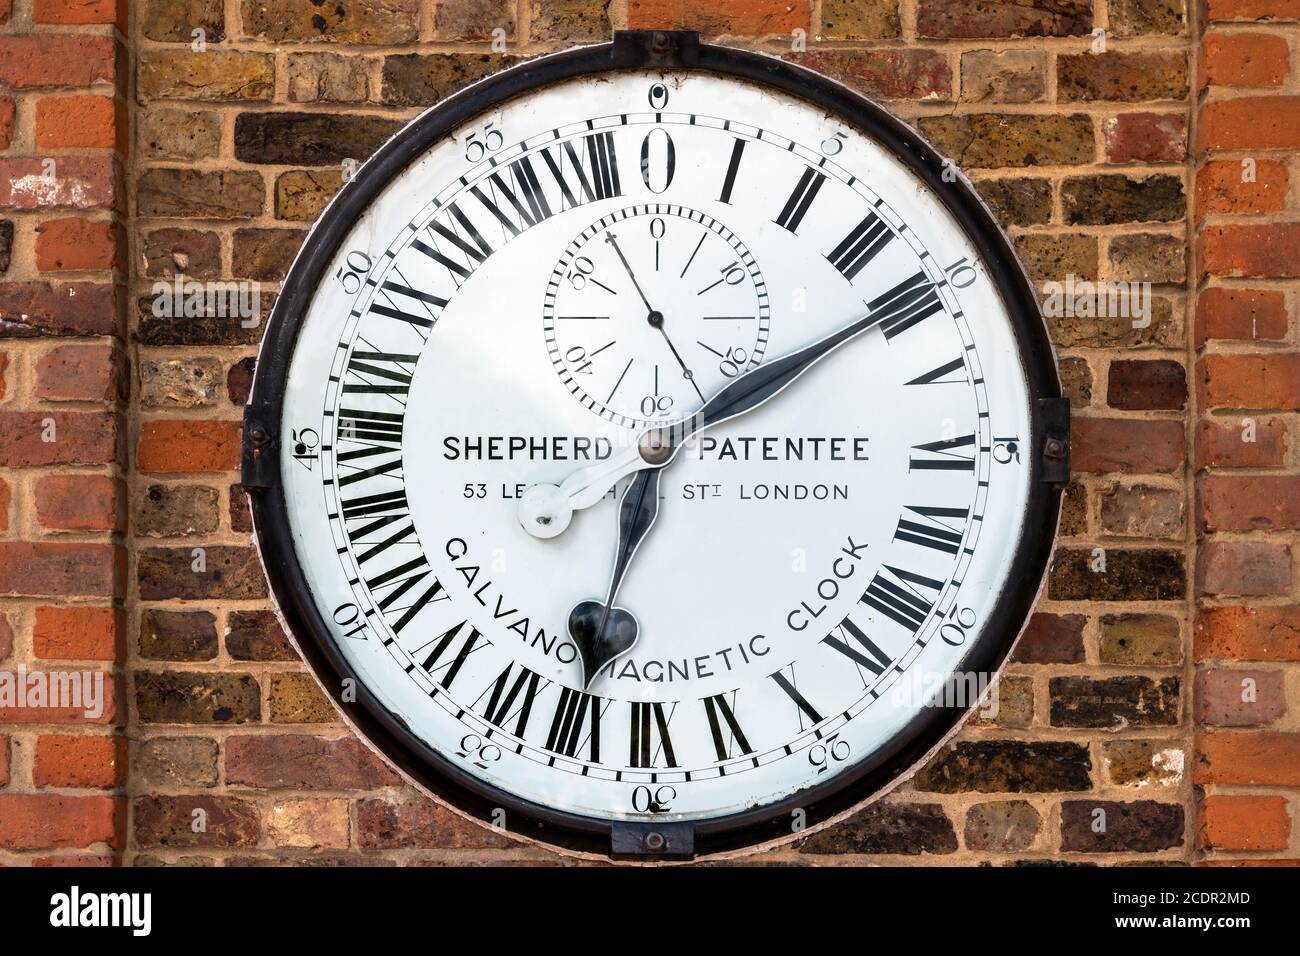 Die Shepherd Gate Clock ist an der Wand außerhalb des Tores des Royal Greenwich Observatory in London montiert. Es ist ungewöhnlich, da es eine vierundzwanzig ho hat Stockfoto